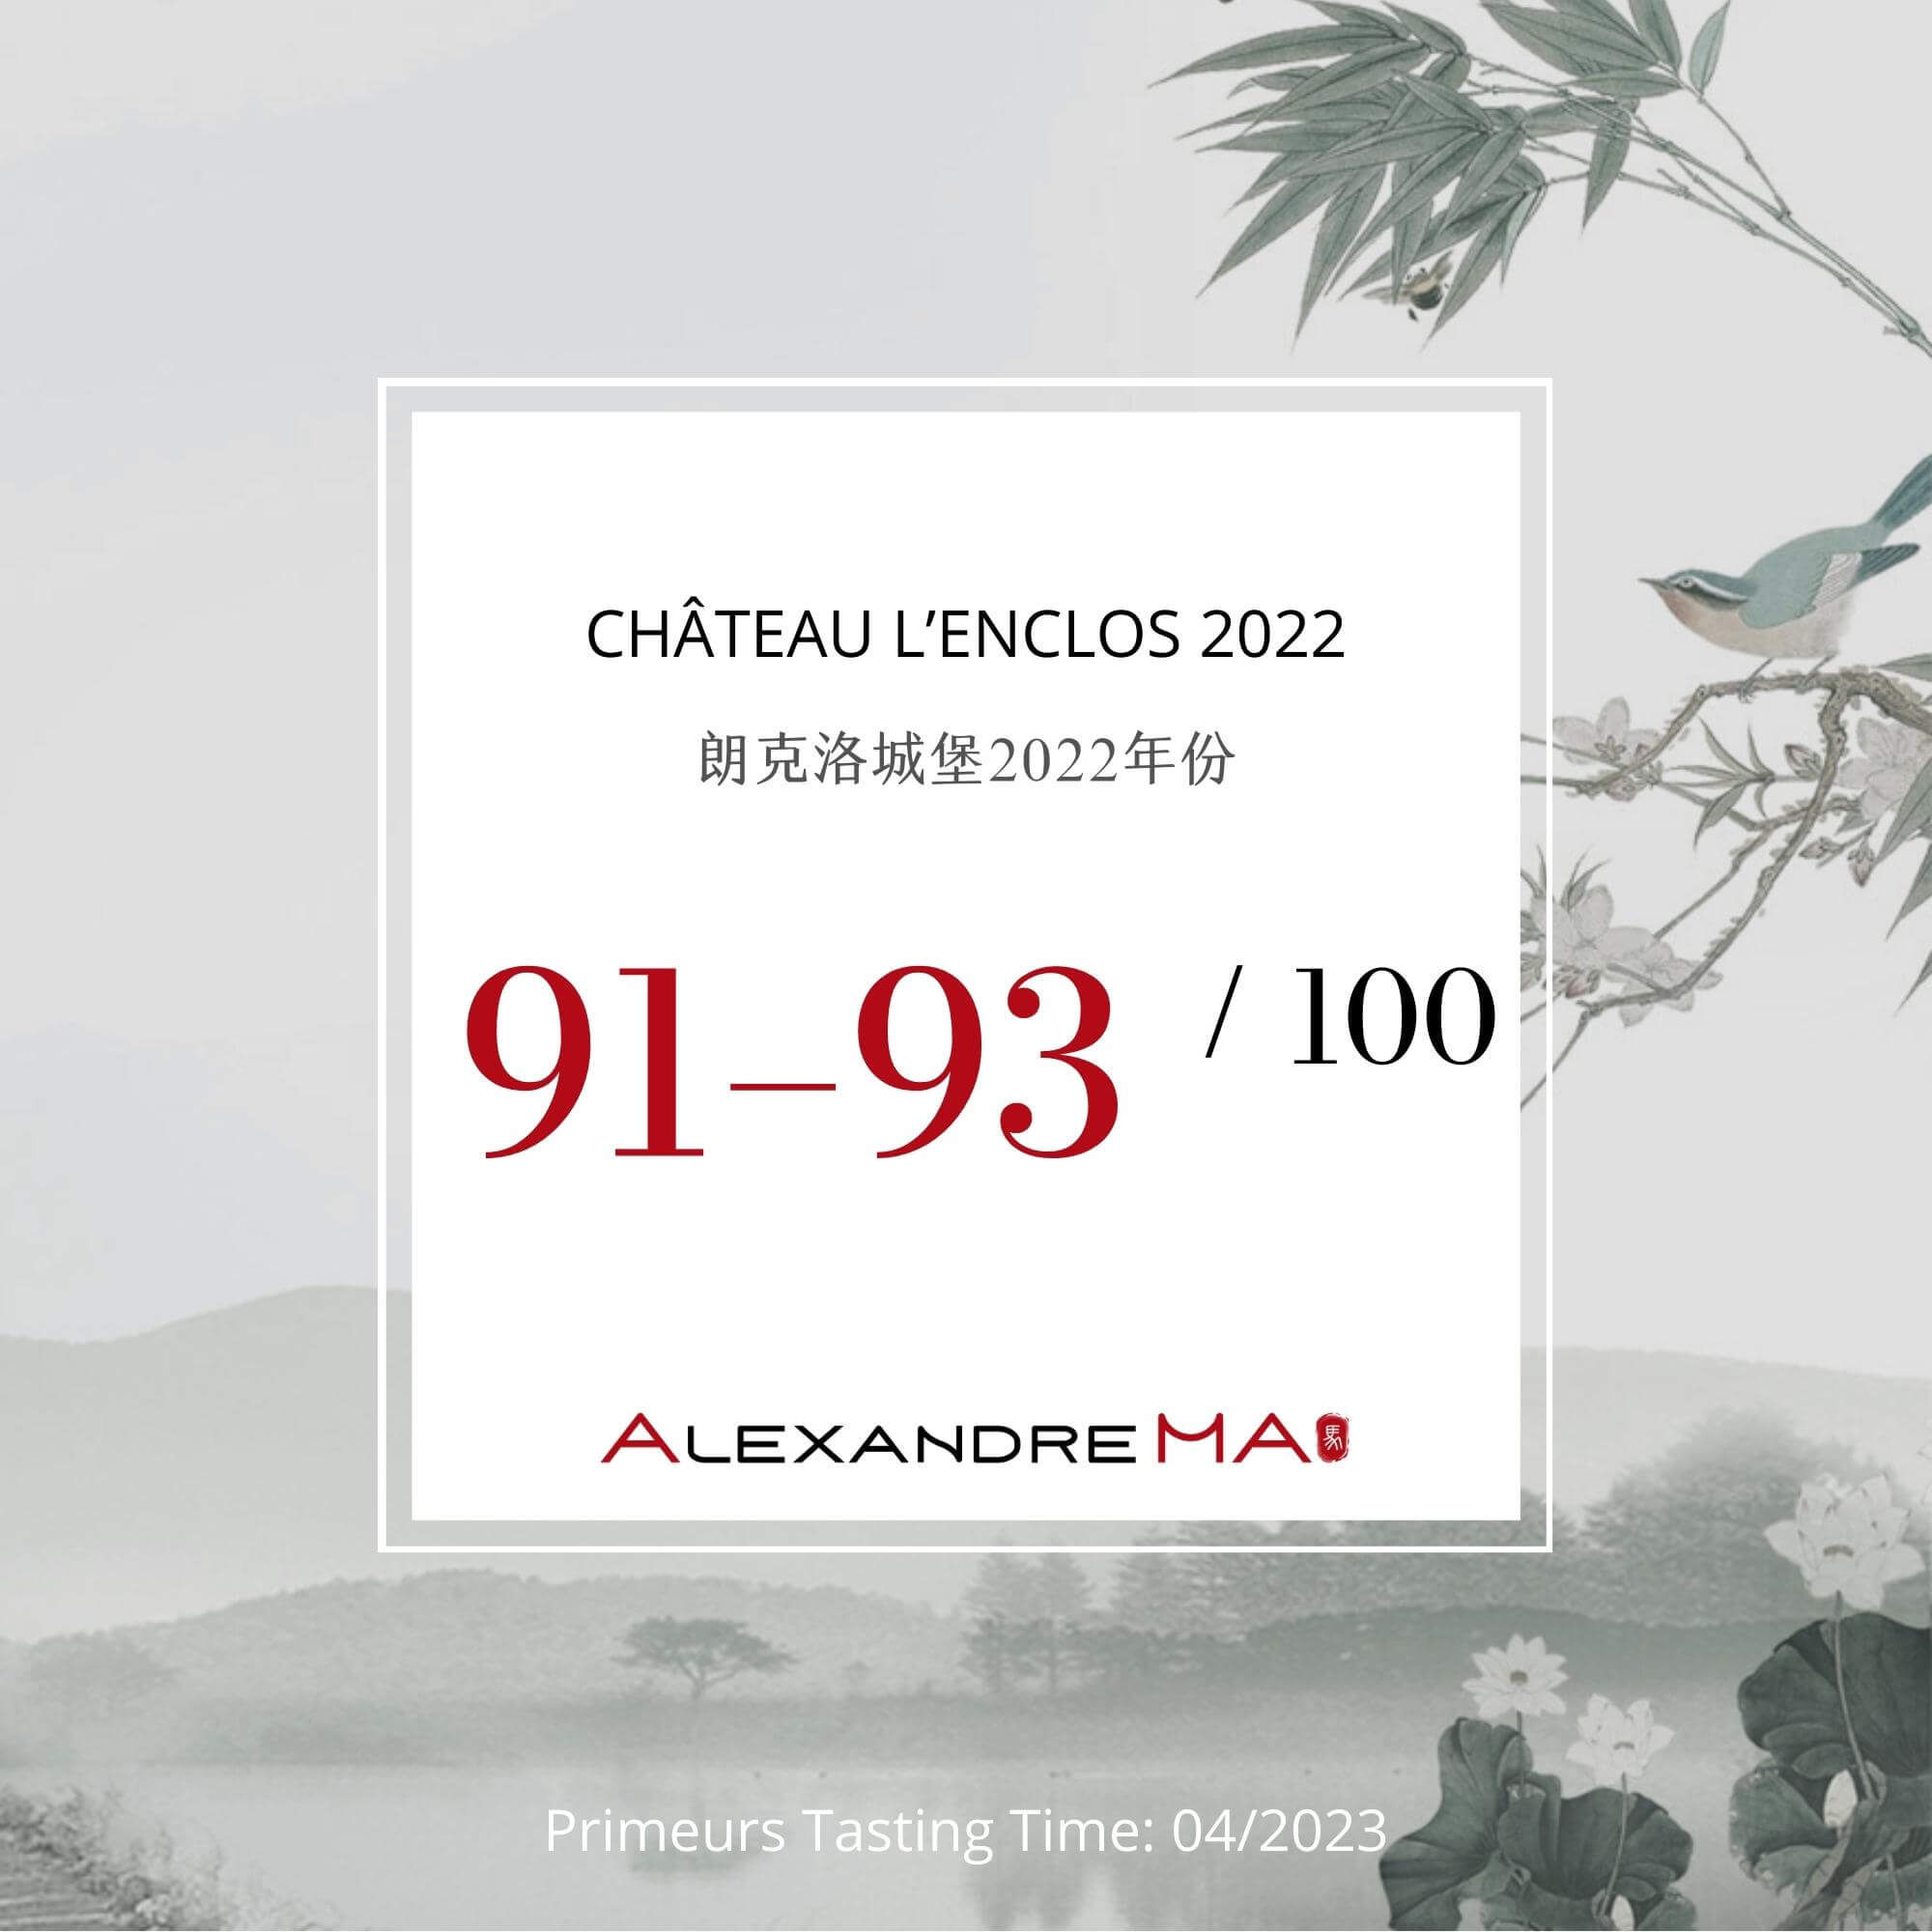 Château L’Enclos 2022 Primeurs - Alexandre MA